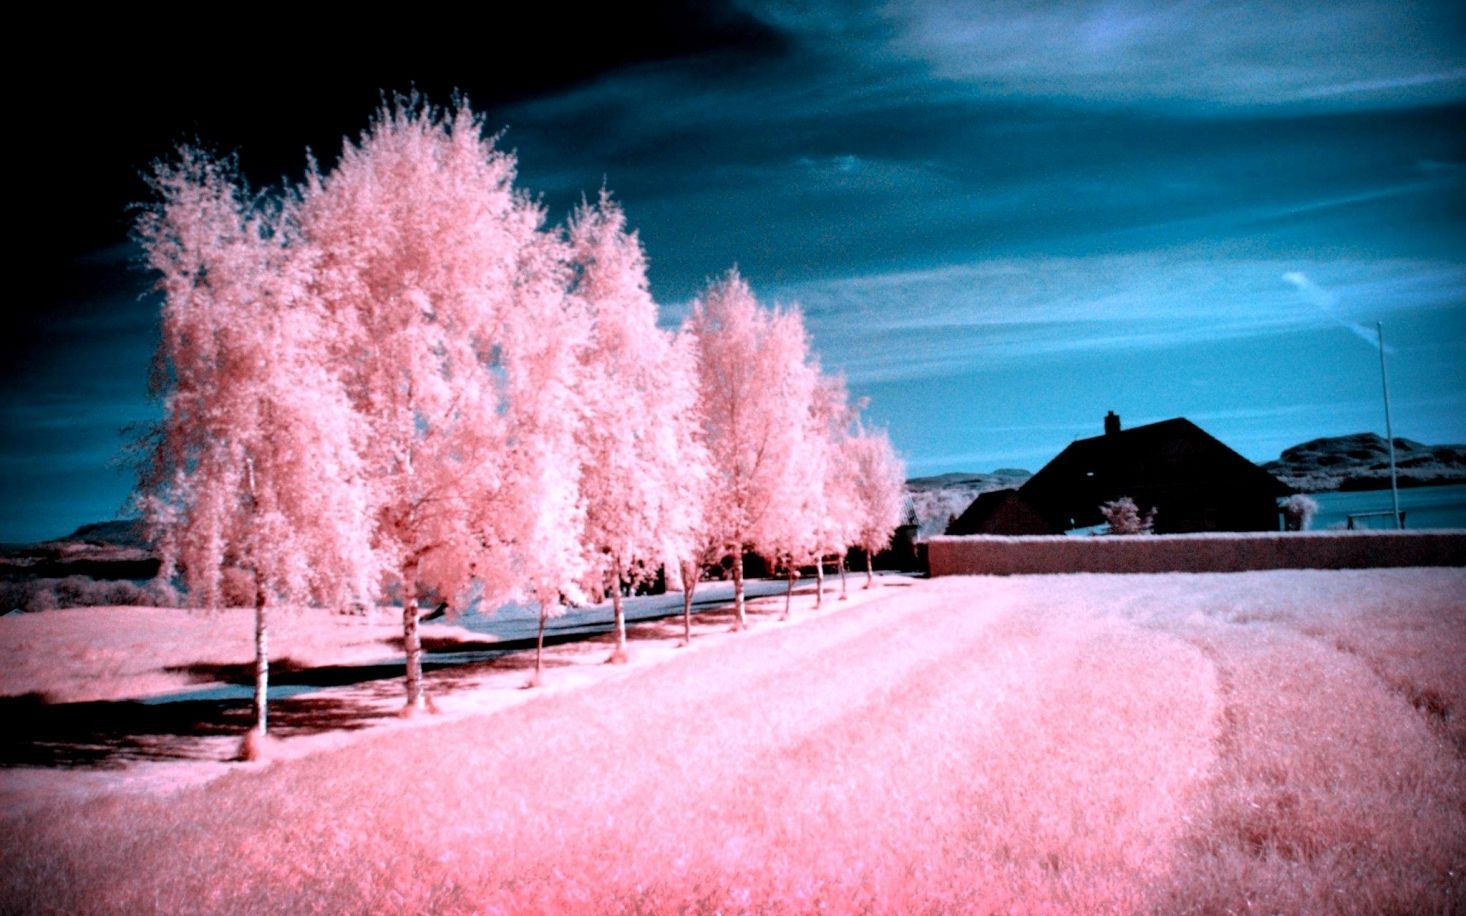 Hình nền hồng cảnh đẹp sẽ làm bạn thích thú với những cảnh quan tuyệt đẹp màu hồng. Các hình nền này mang lại cho bạn cảm giác nhẹ nhàng, ấm áp và thư thái khi sử dụng điện thoại hoặc máy tính. Hãy để mình bị cuốn hút vào vẻ đẹp quyến rũ của hình nền hồng cảnh đẹp này.